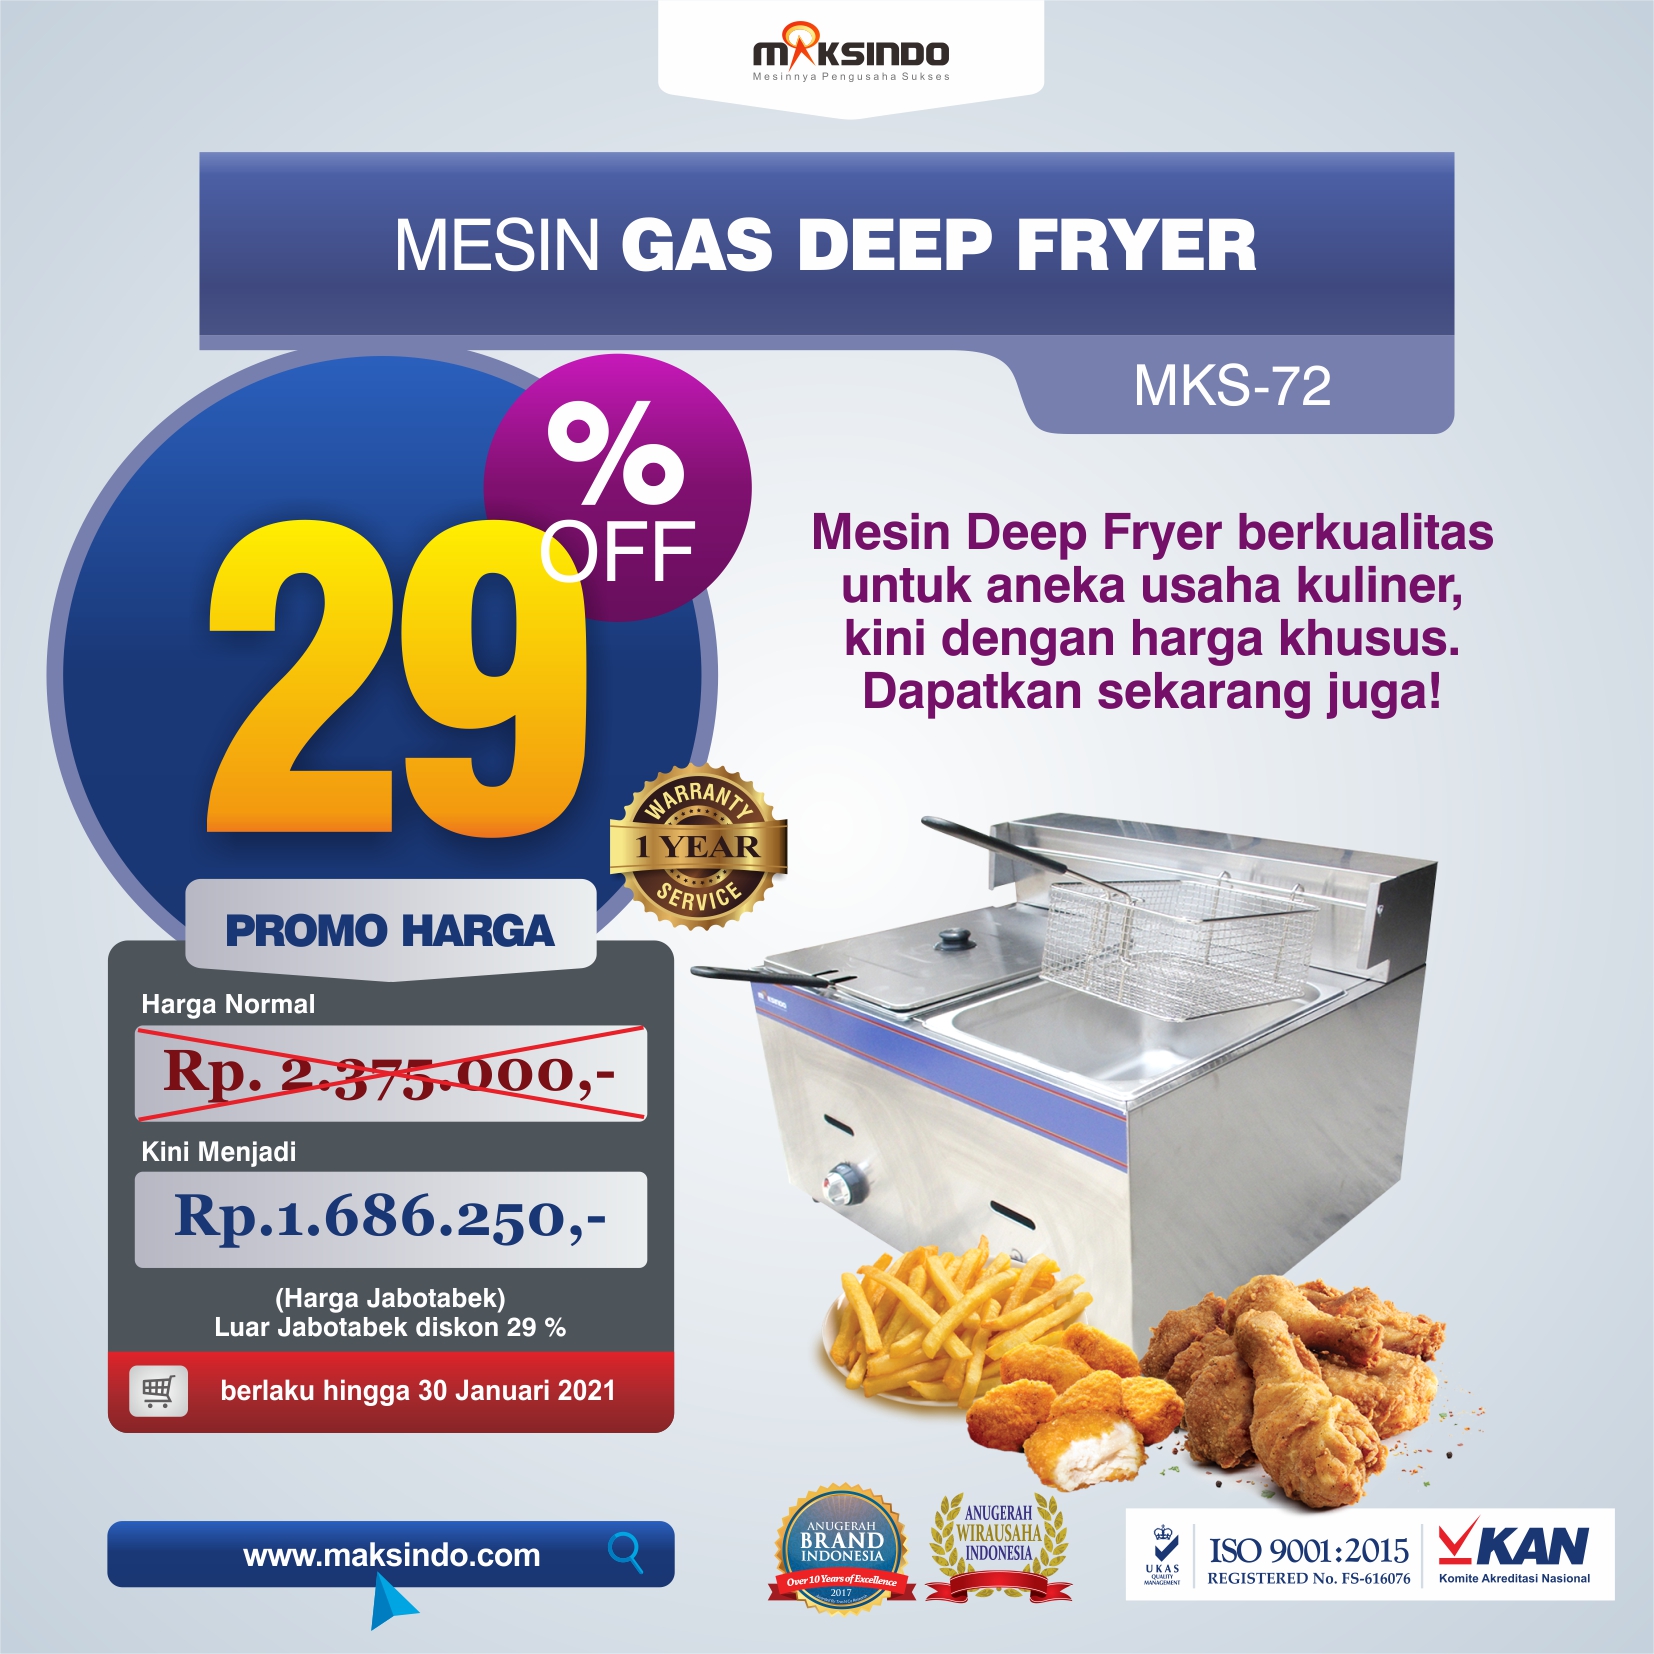 Jual Mesin Gas Deep Fryer MKS-72 di Semarang